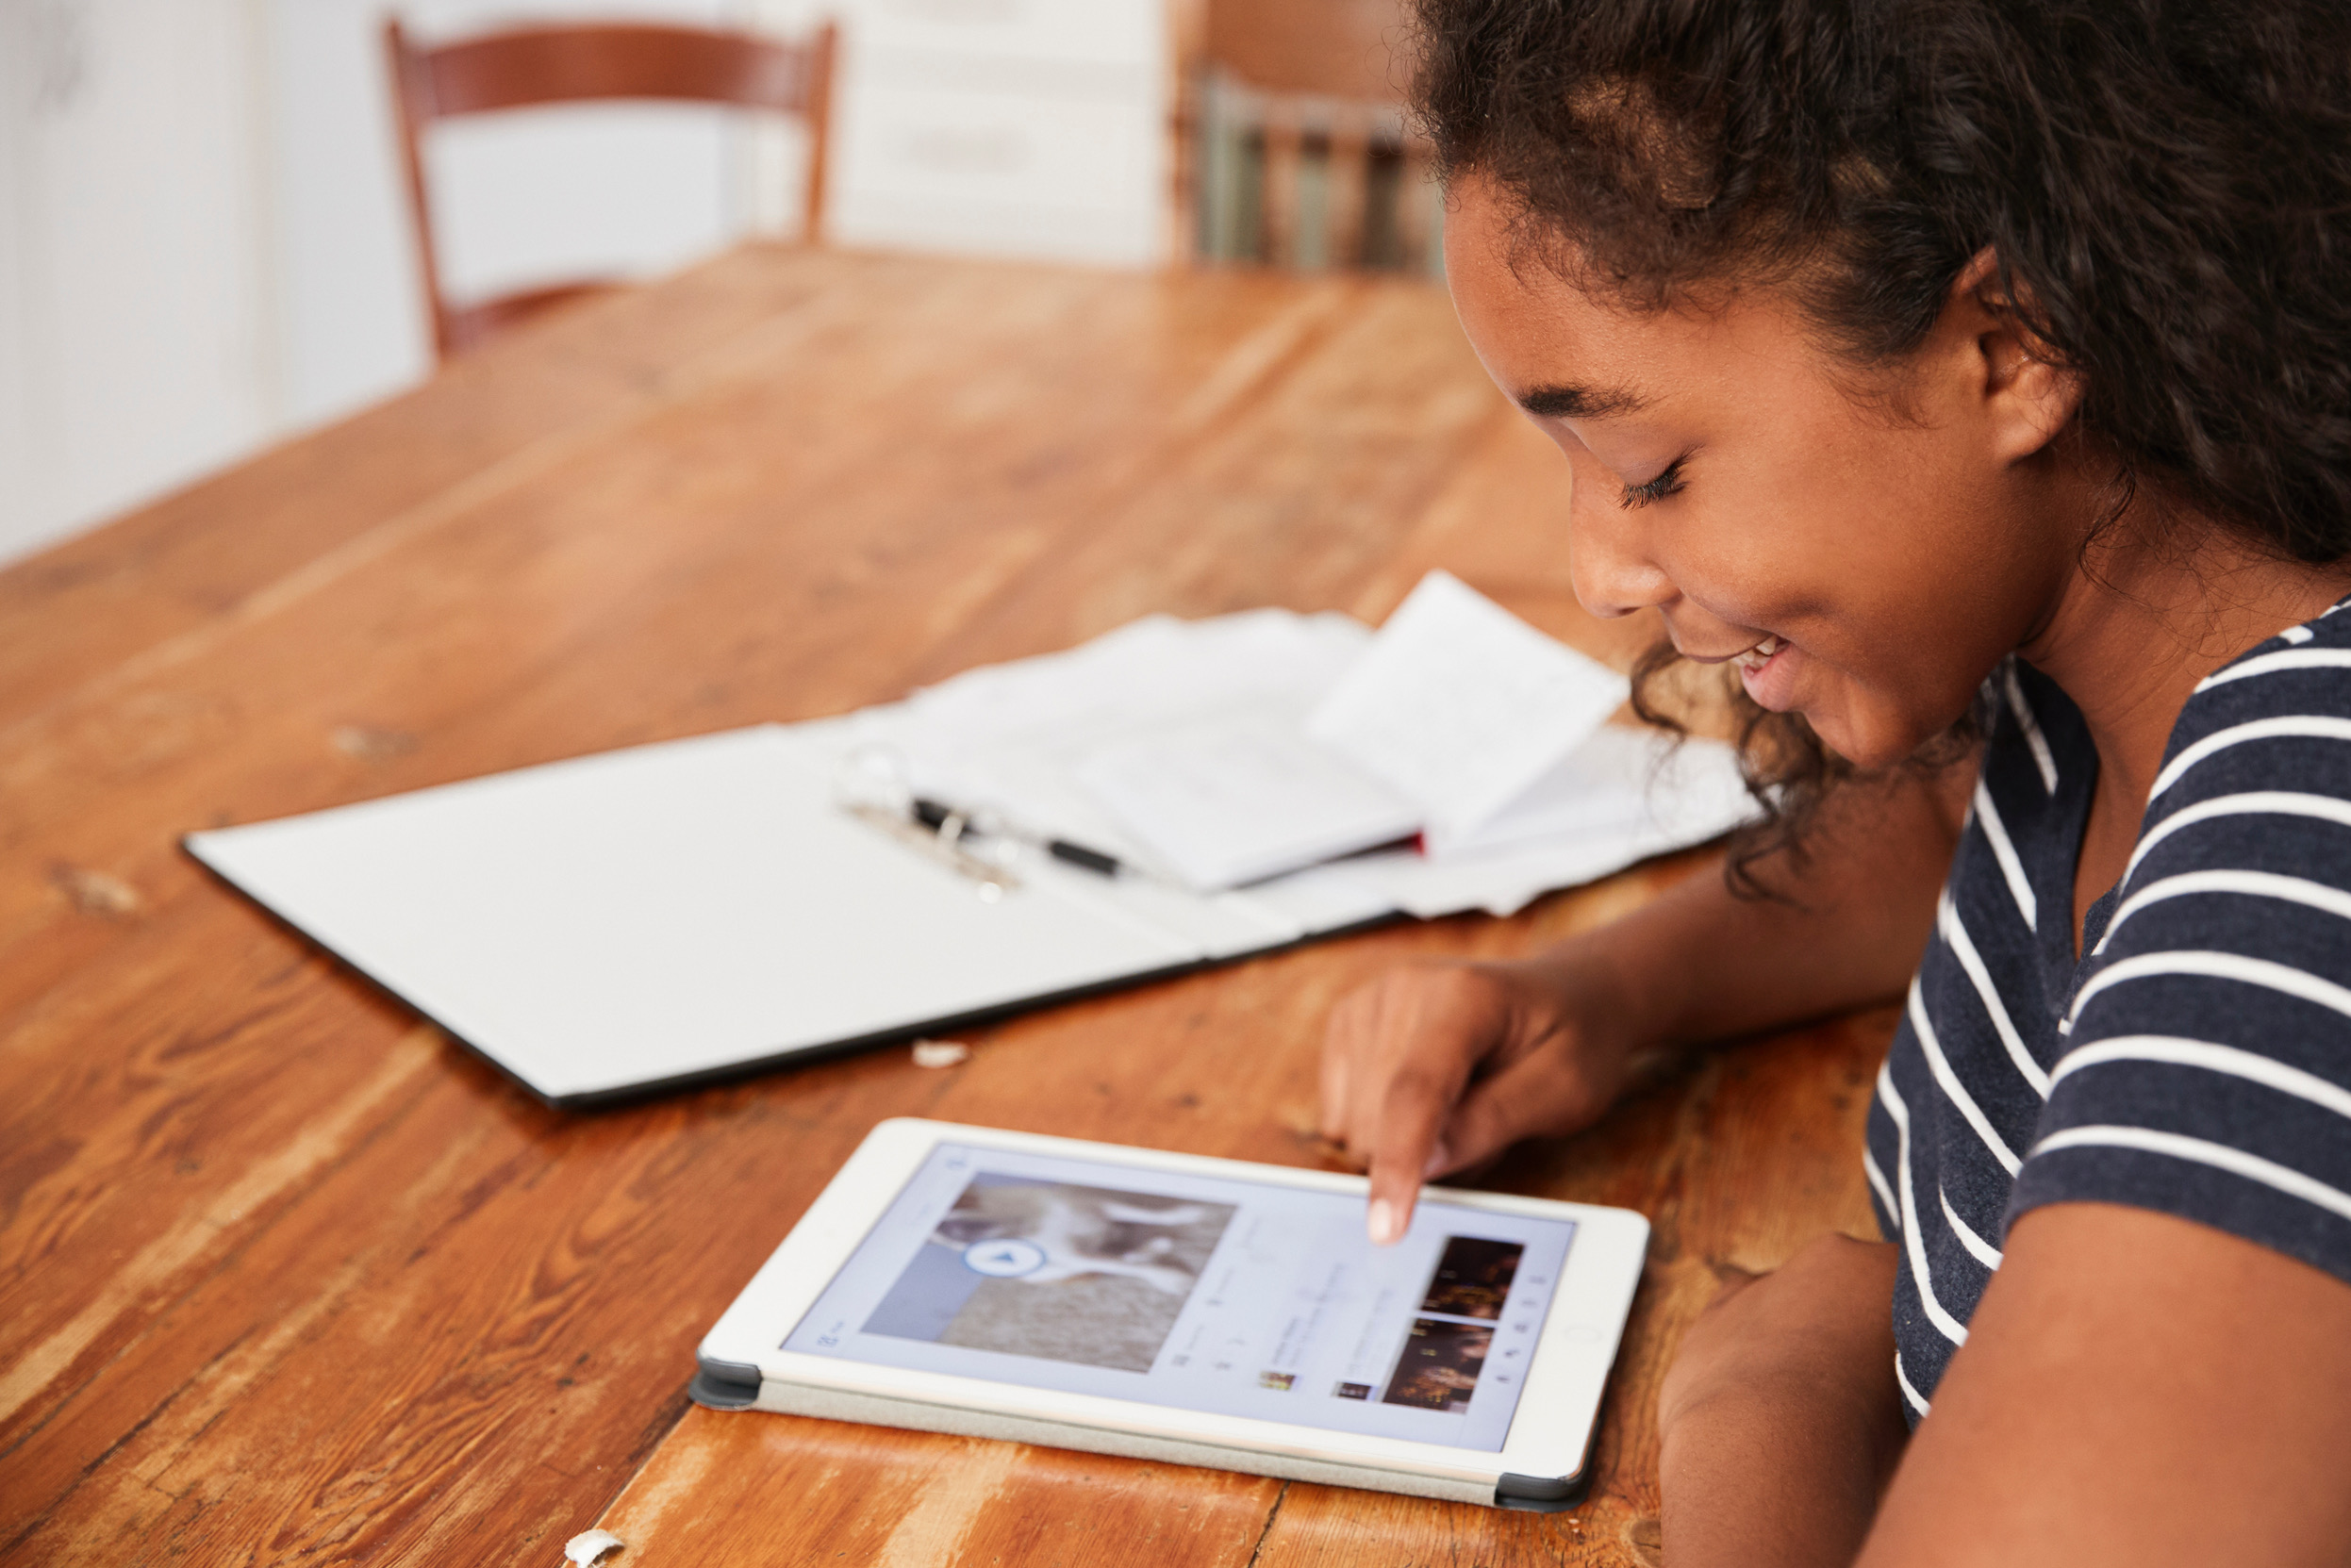 Continuité pédagogique : Le Département de La Réunion met à disposition des tablettes numériques aux collégiens boursiers